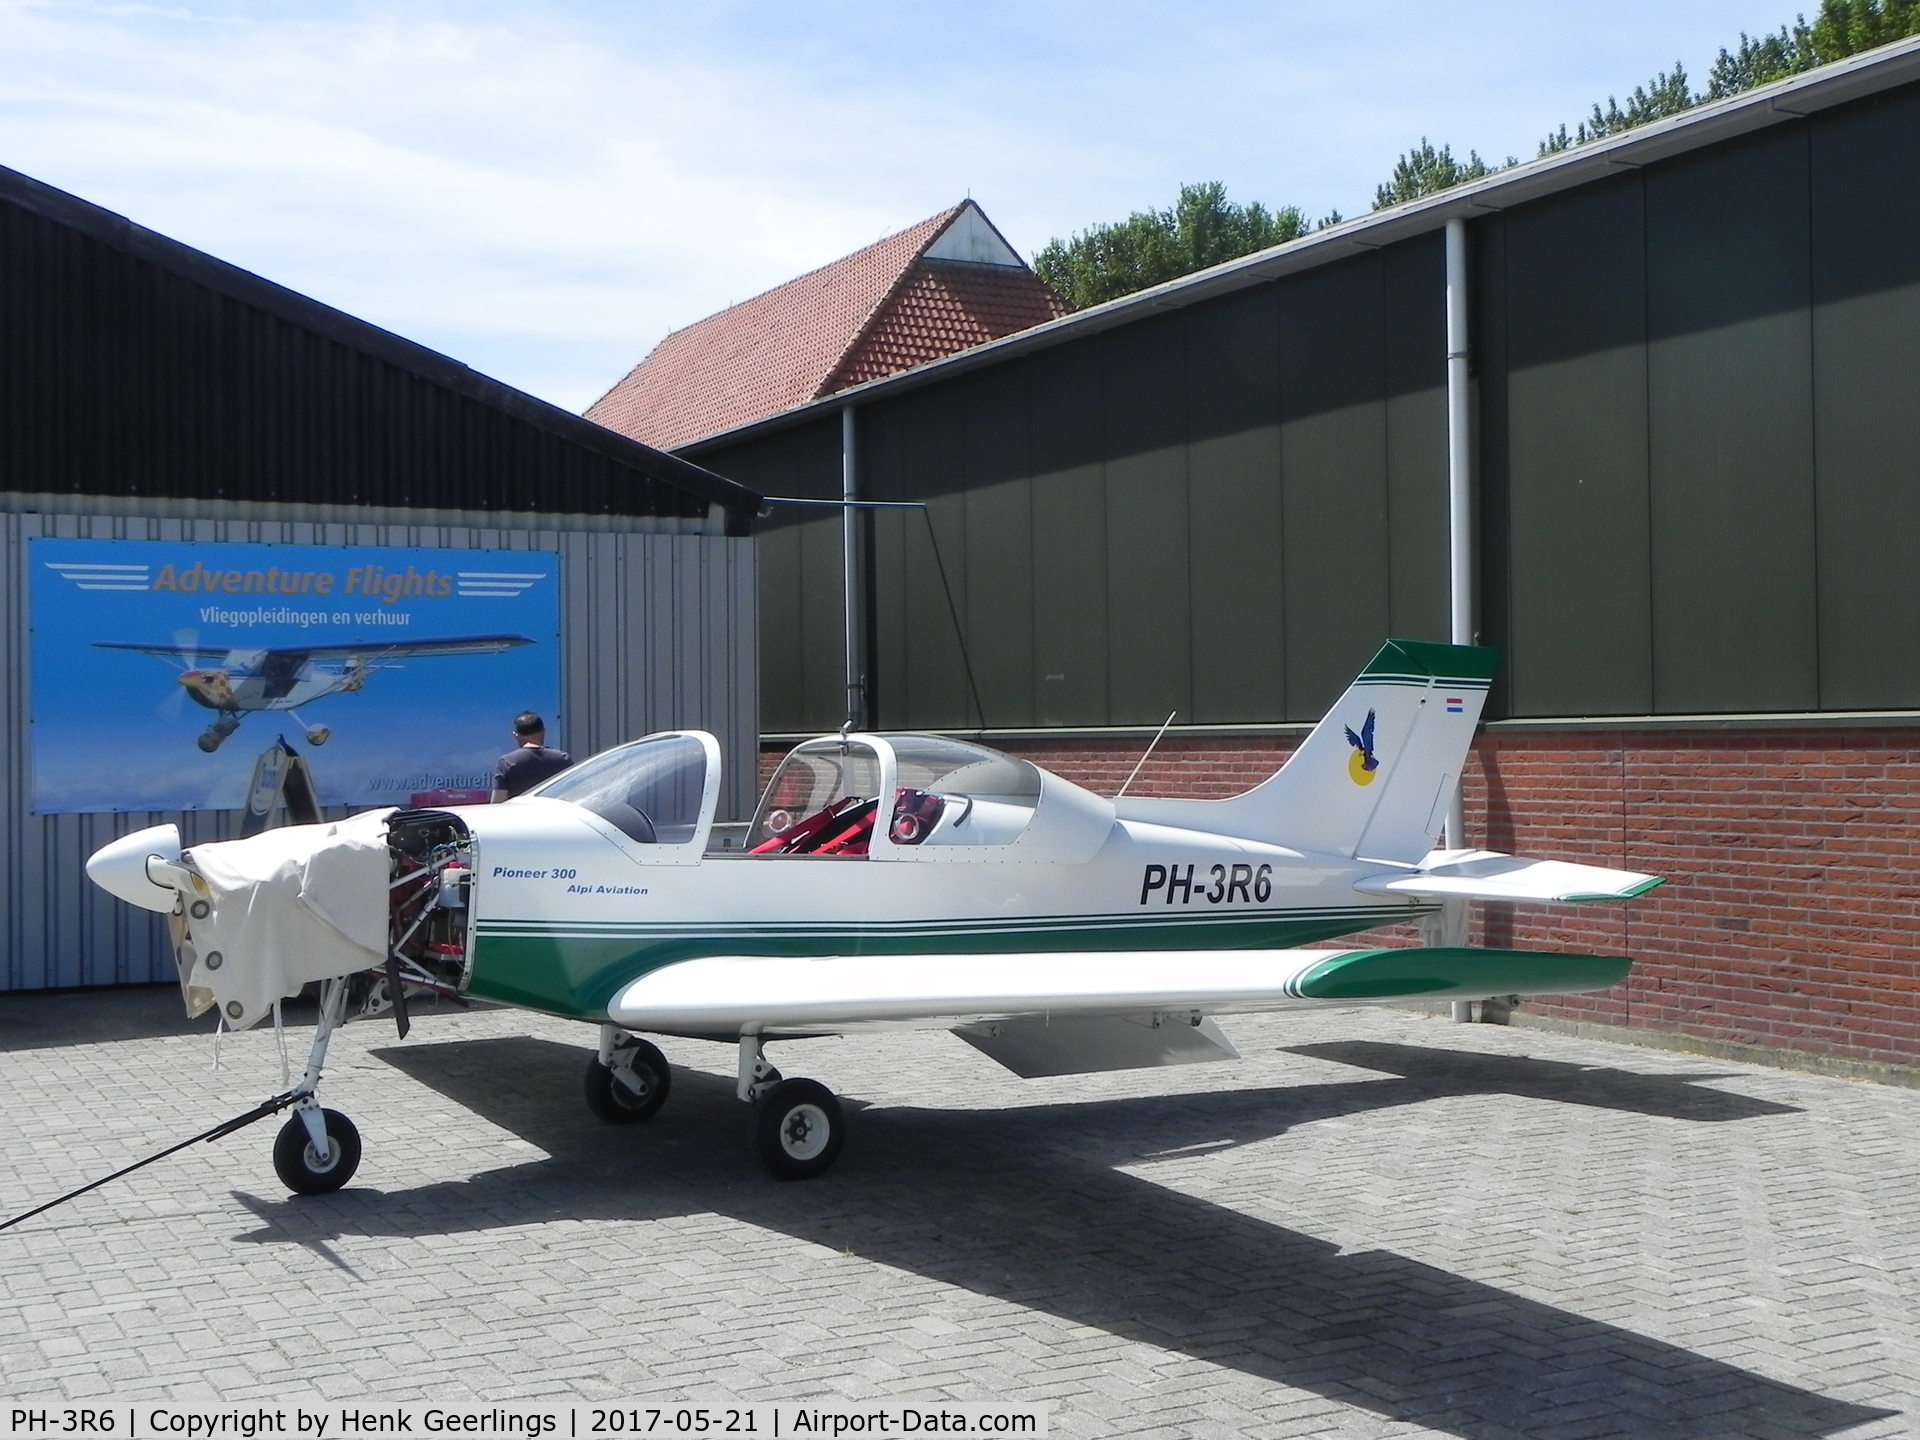 PH-3R6, 2002 Alpi Aviation Pioneer 300N C/N 0072, Ultralight, Middenmeer aer Park